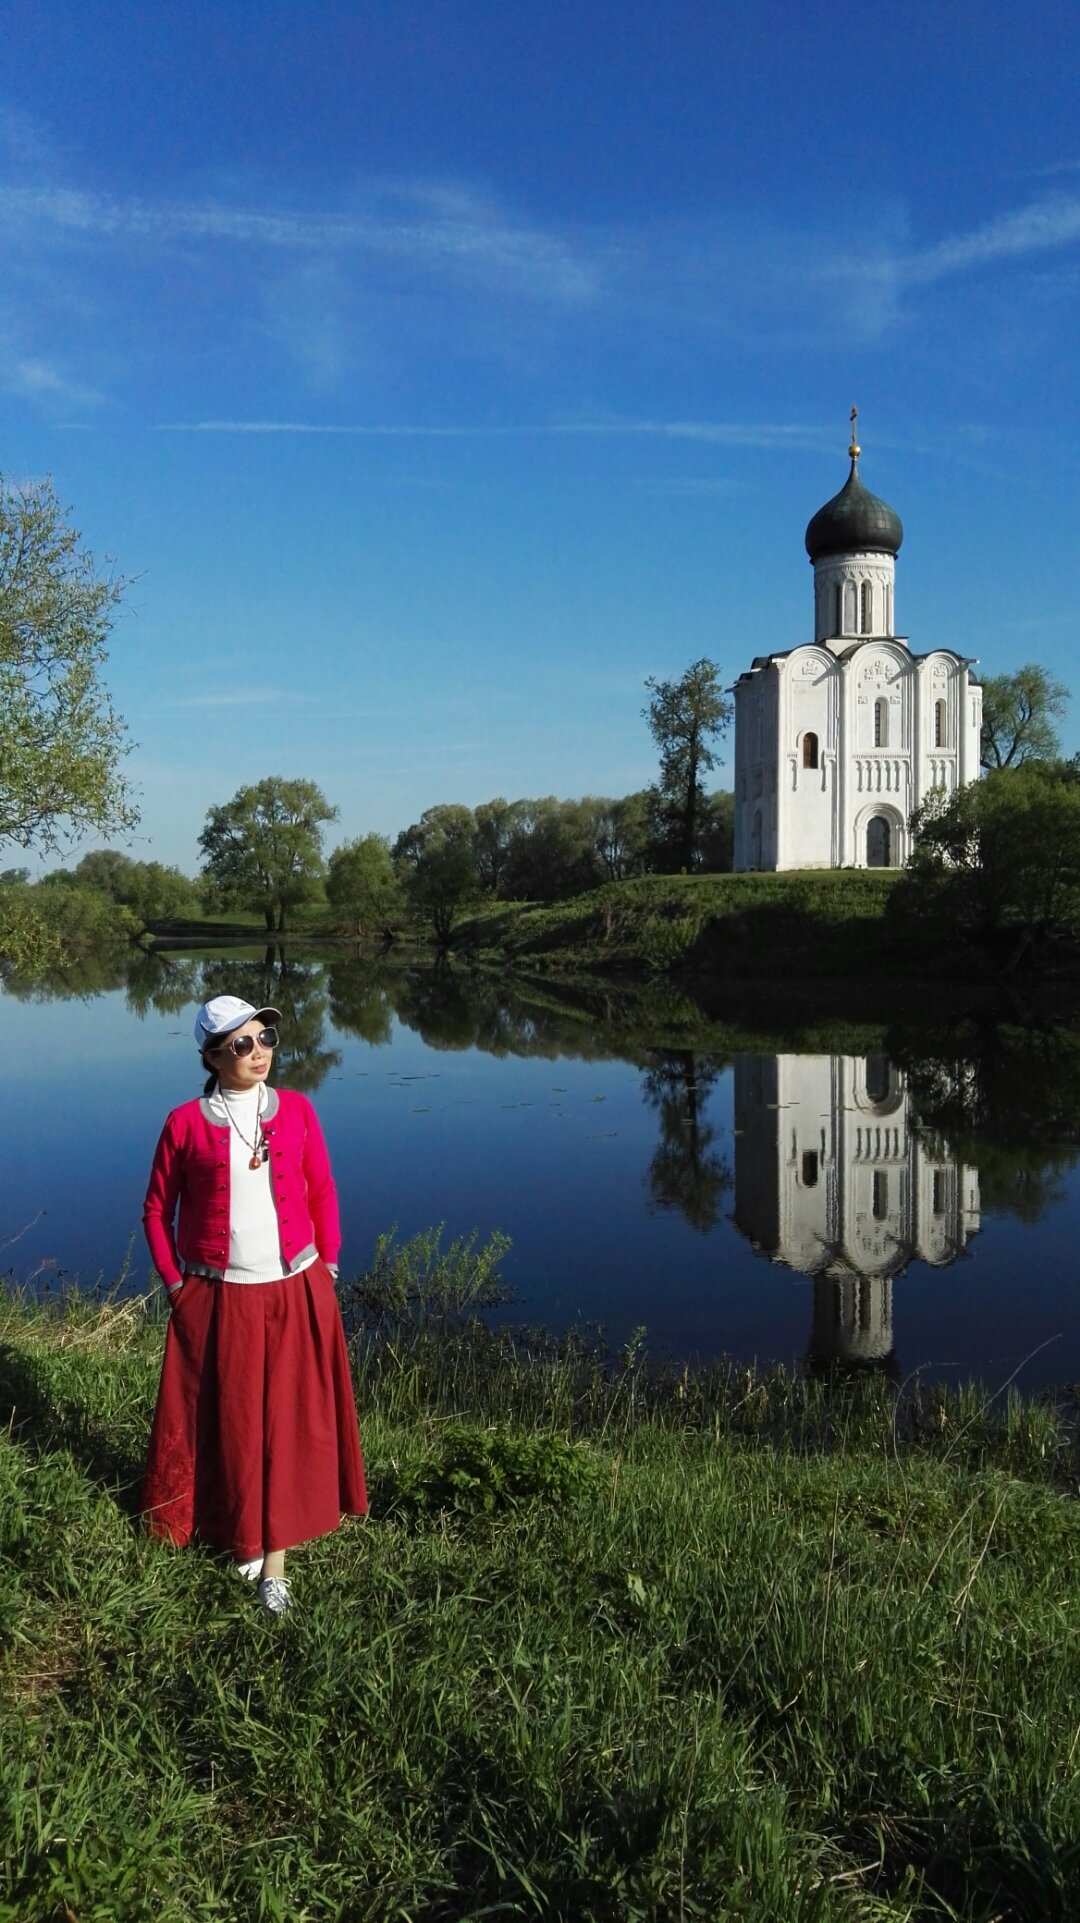 弗拉基米尔是俄罗斯的金环小镇之一，这里宁静有着深厚的文化底蕴，前面3 图是弗拉基米尔小镇郊外的“新娘